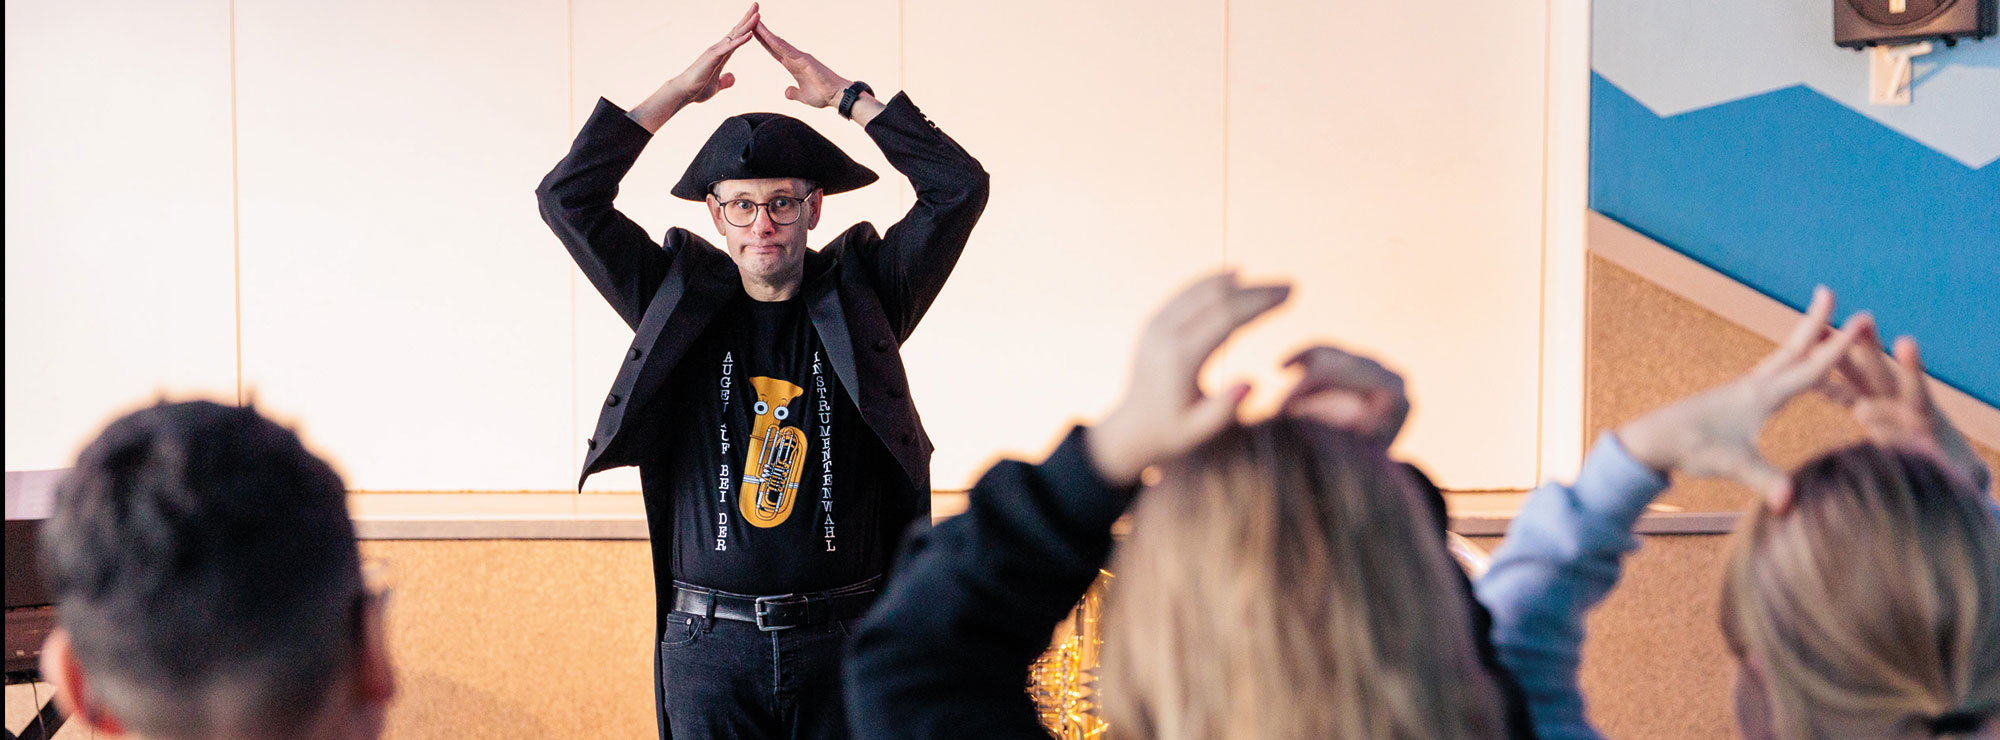 Jens Wischmeyer tanzt mit den Kindern aus dem Publikum des Klassenzimmerkonzertes